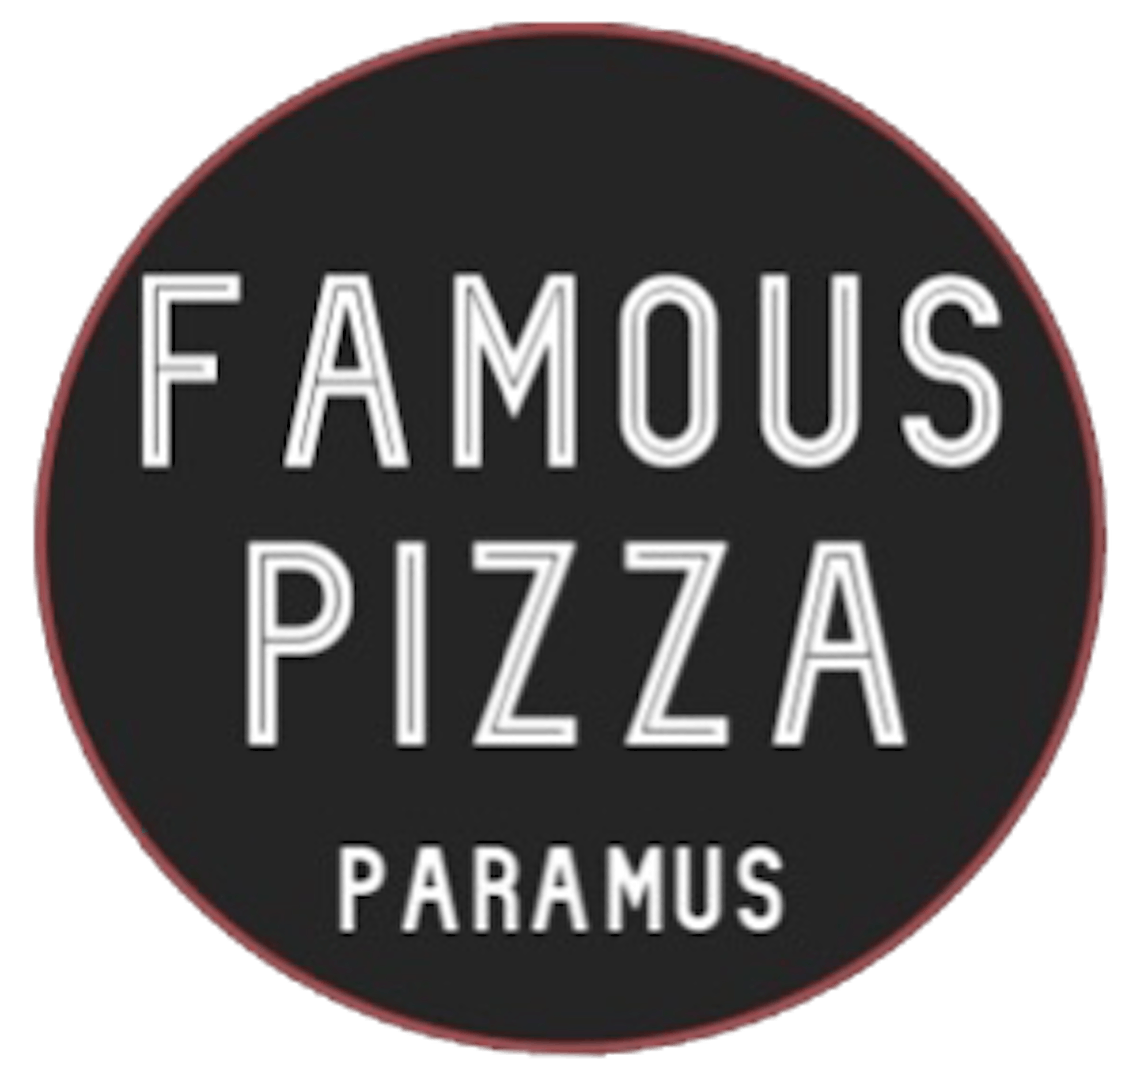 FAMOUS PIZZA PARAMUS